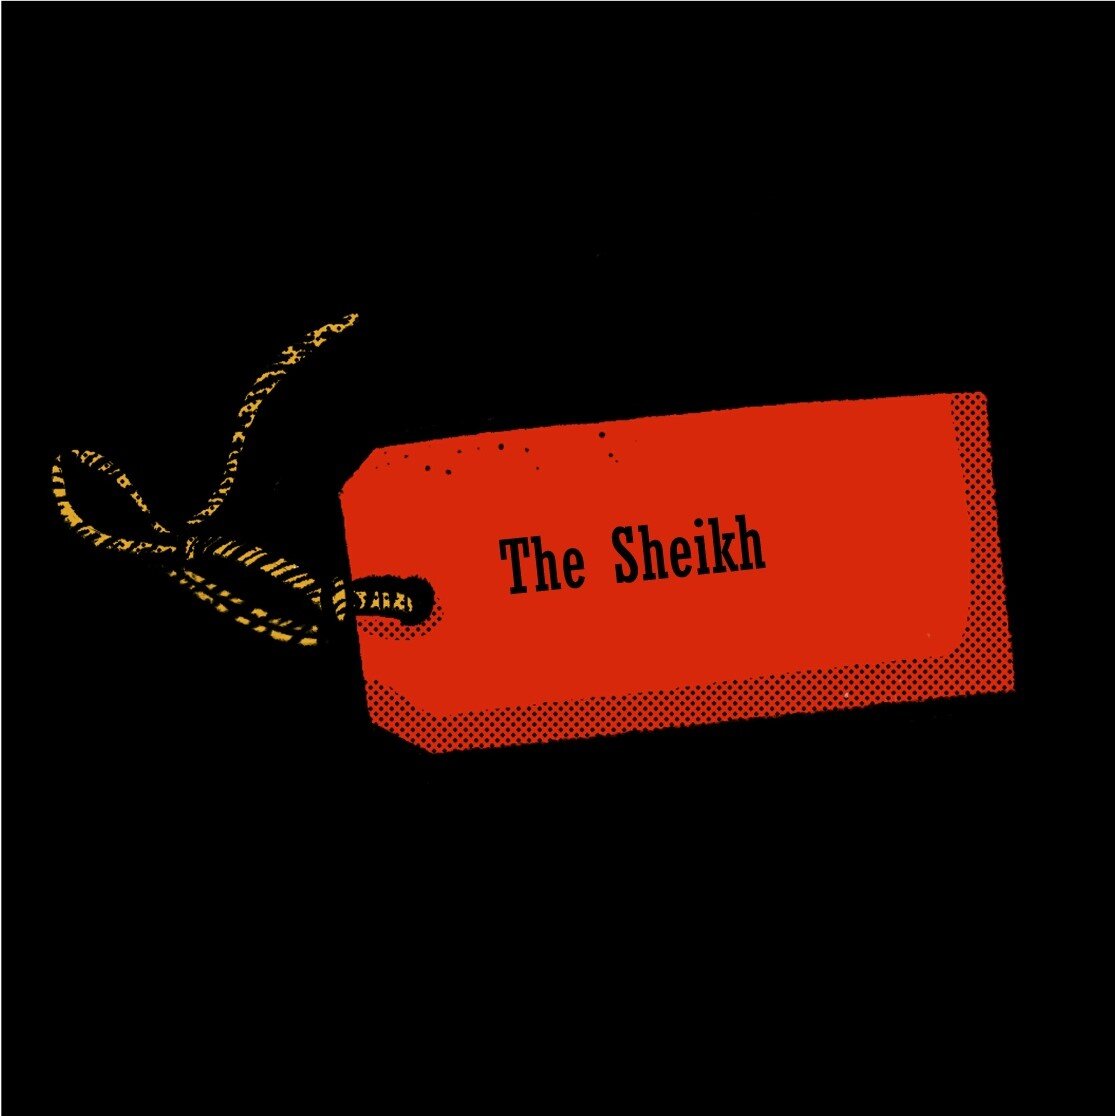 Episode 10: The Sheikh